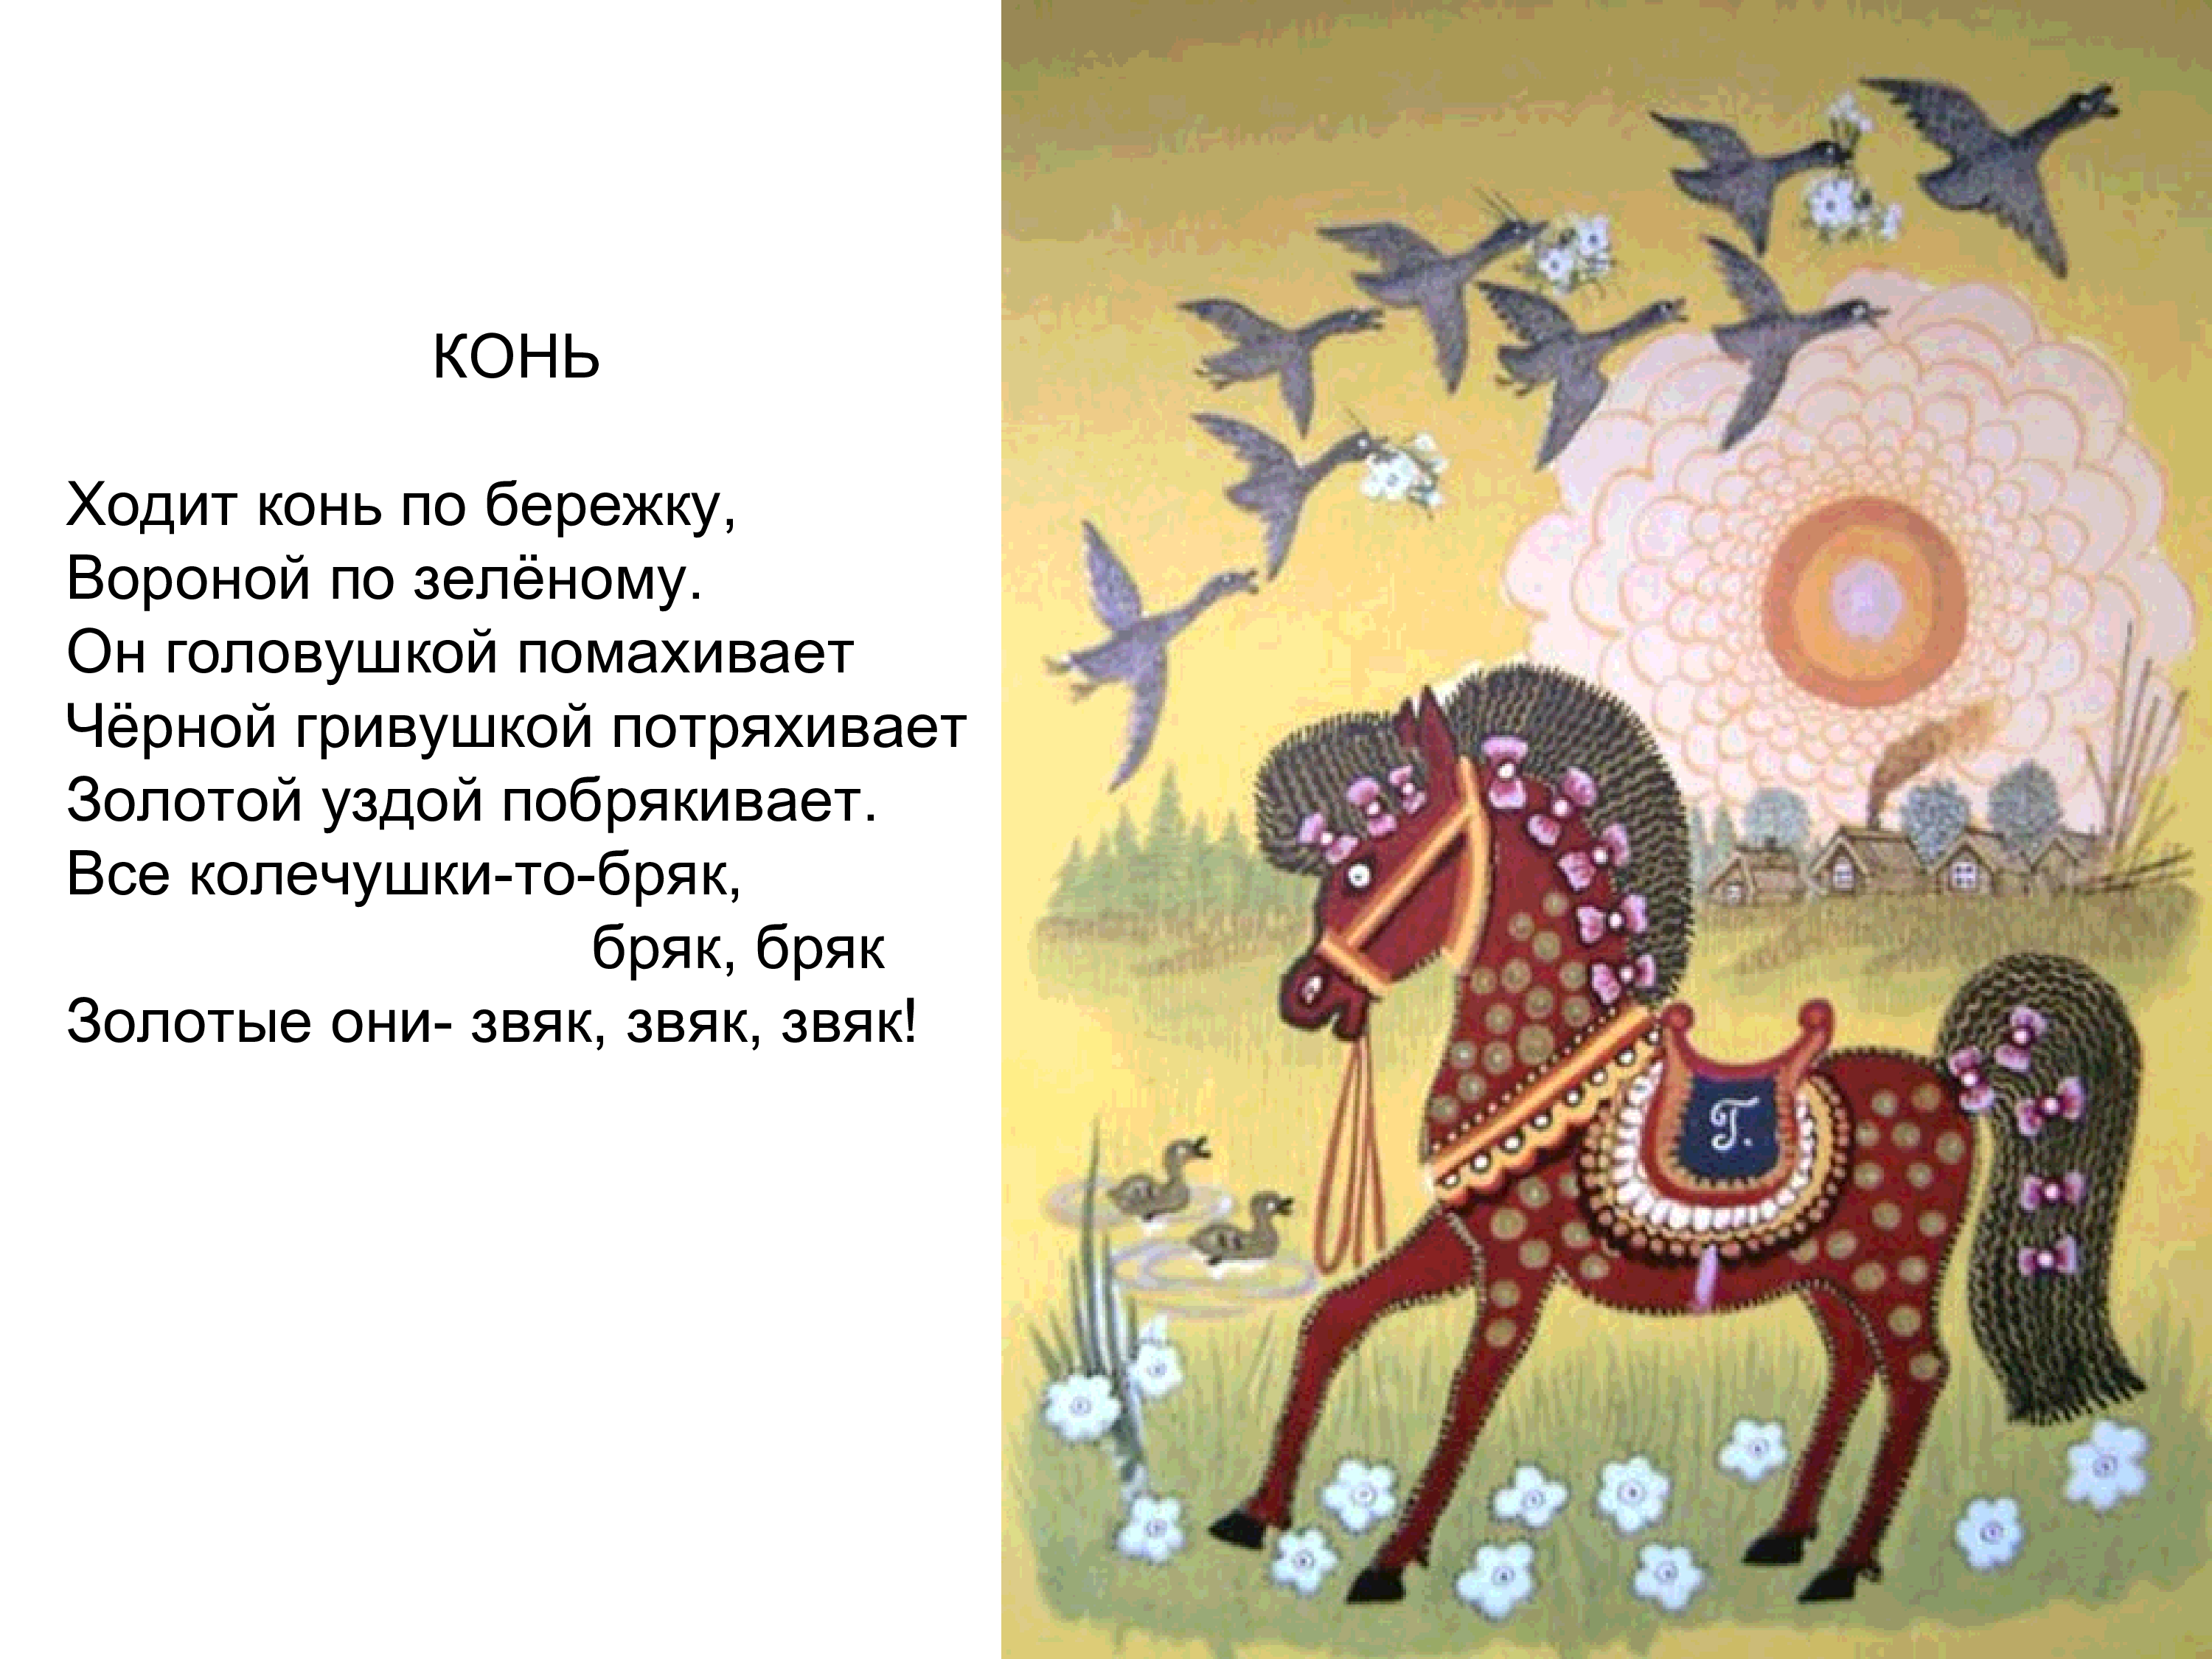 Иллюстрация Васнецова ходит конь по бережку